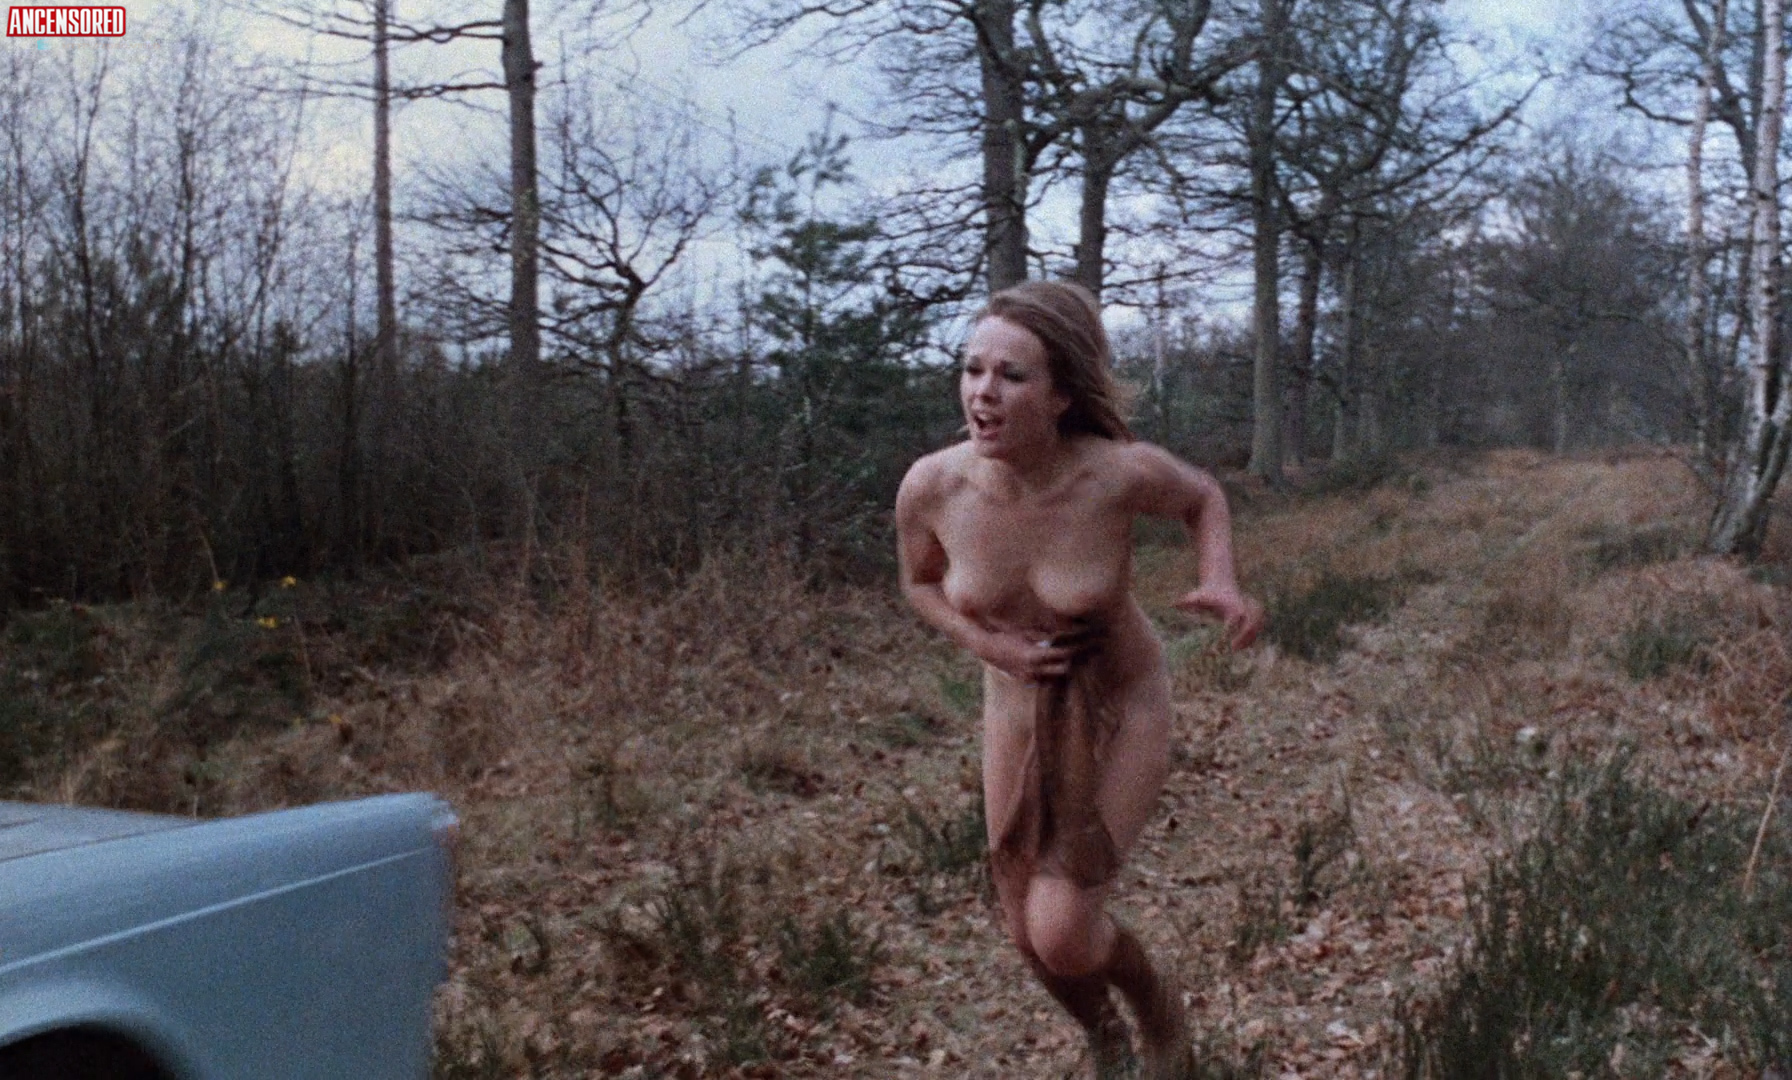 Вивиан Невес nude pics.